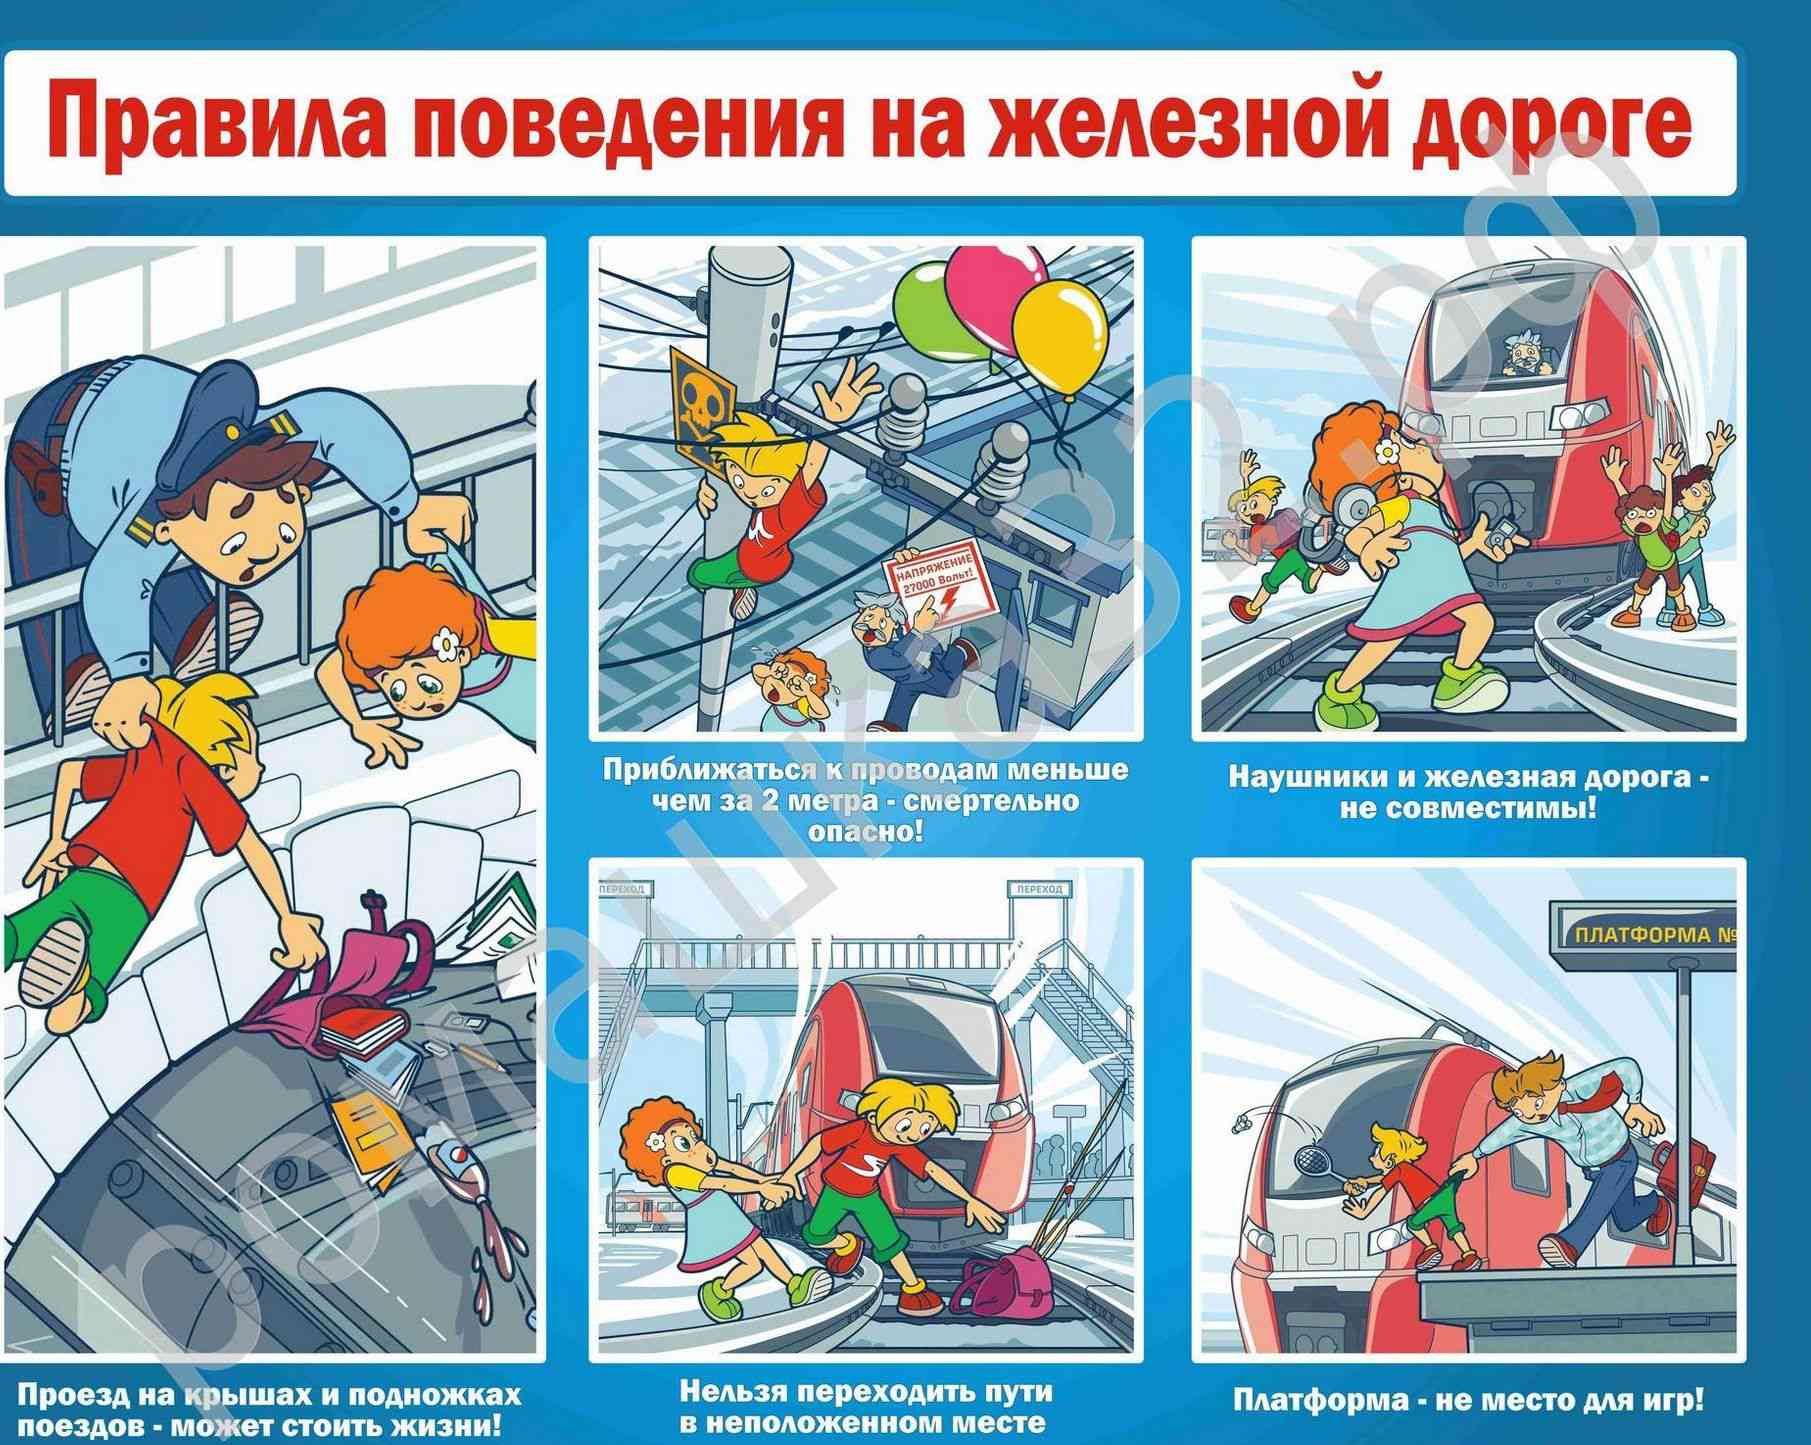 Правила безопасности поведения детей на Железнодорожном транспорте